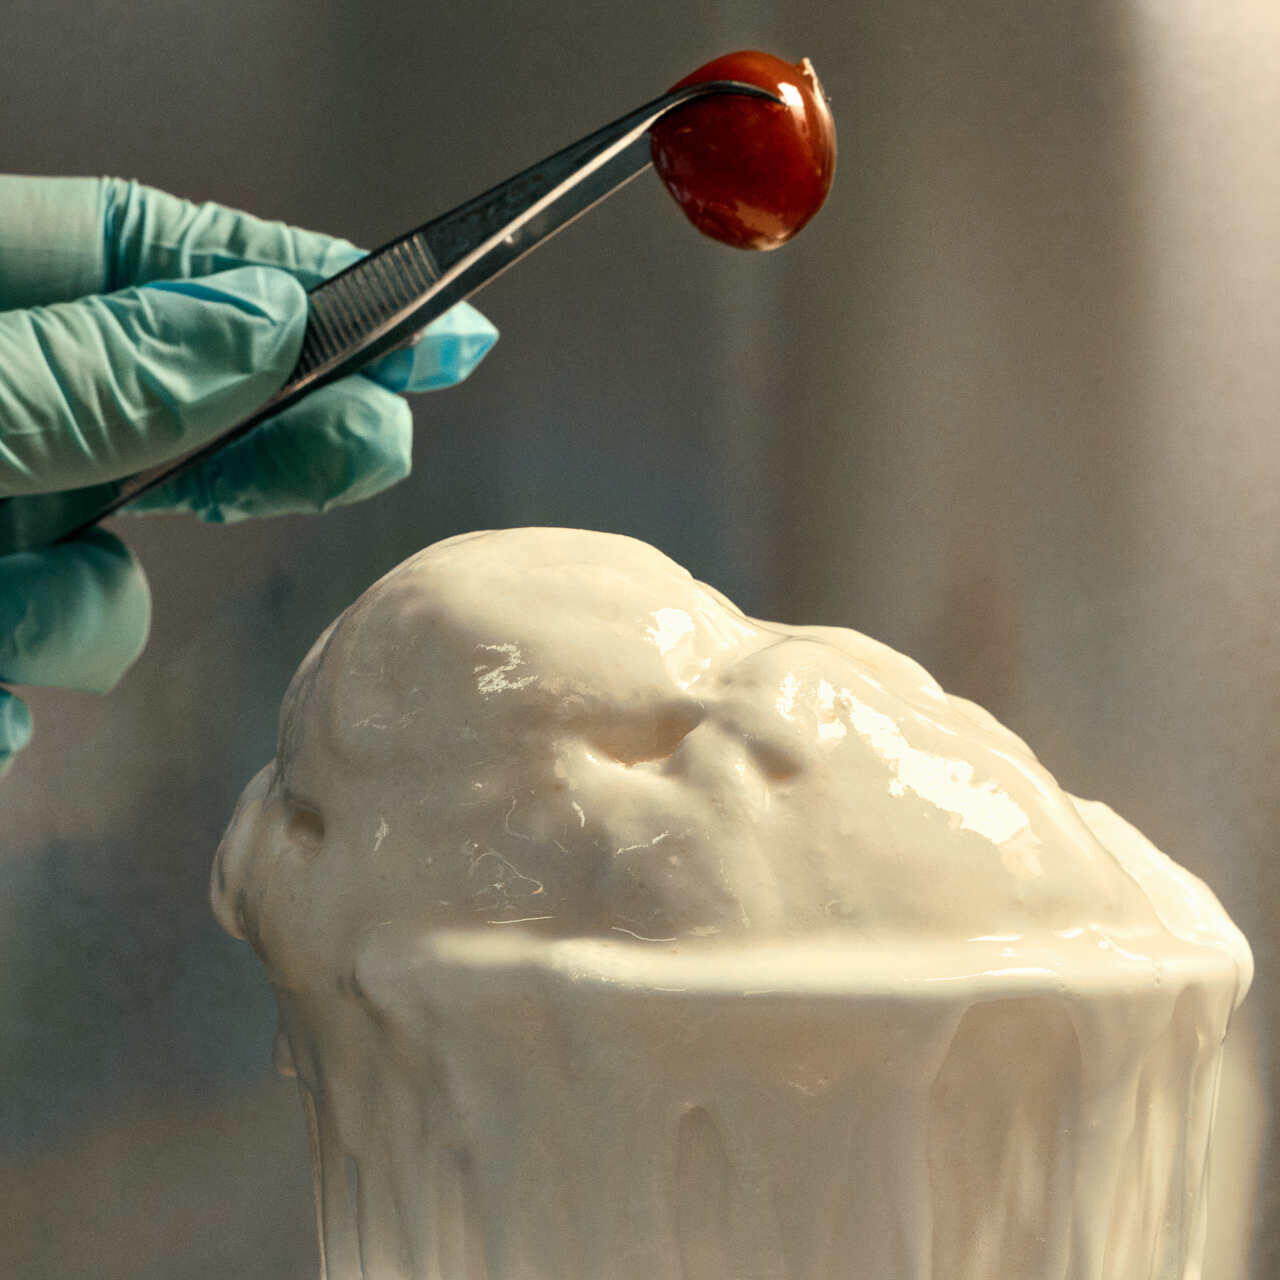 Plastica: il gelato alla vaniglia di Eleonora Ortolani fatto dai rifiuti plastici